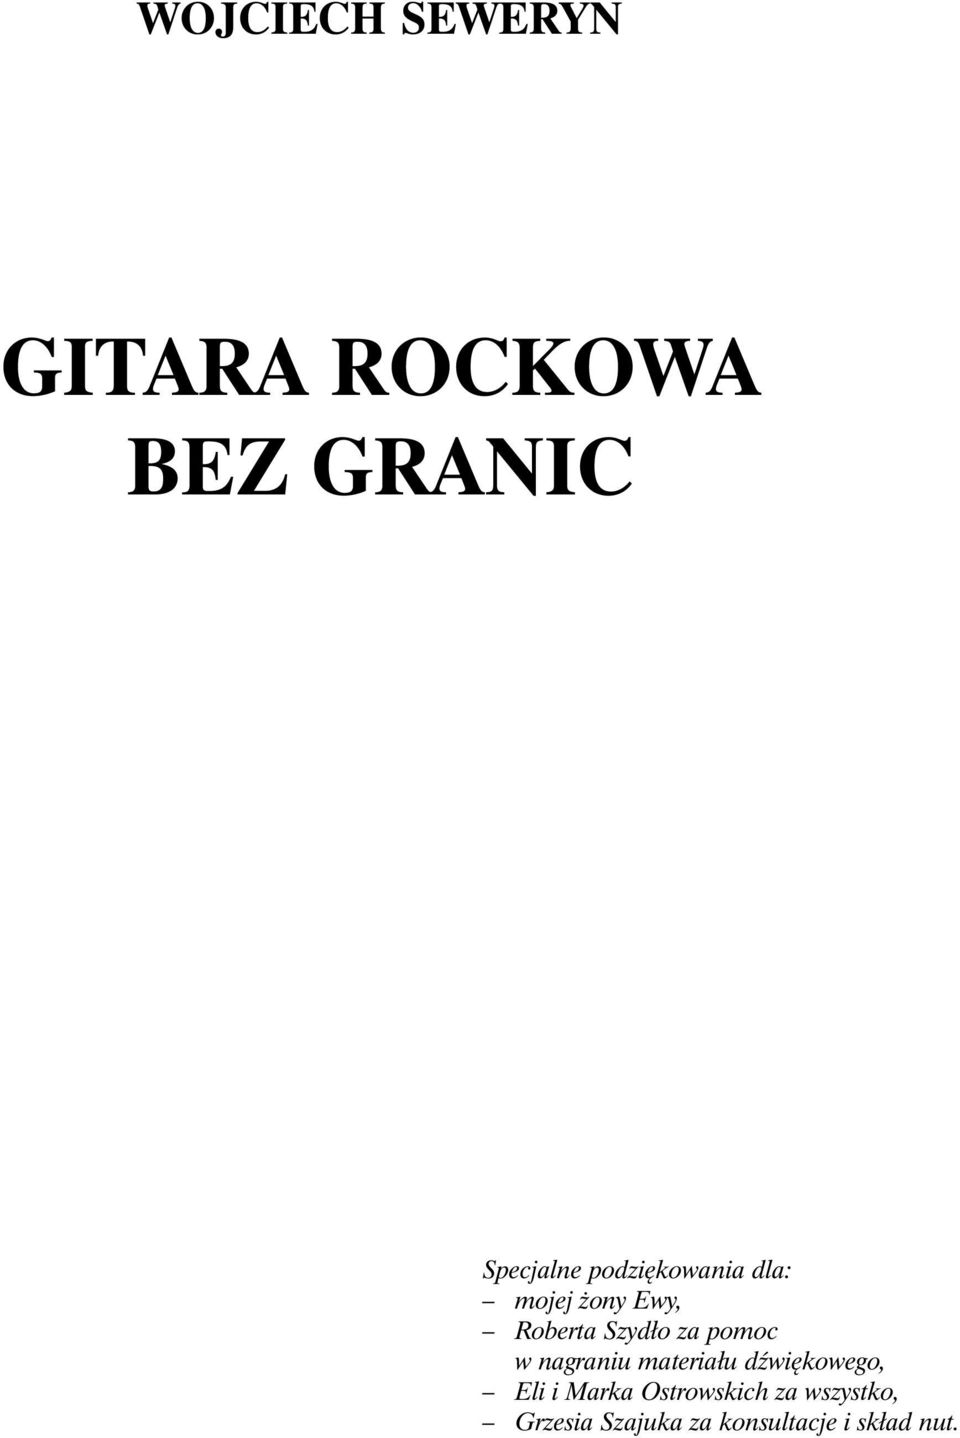 WOJCIECH SEWERYN GITARA ROCKOWA BEZ GRANIC - PDF Darmowe pobieranie